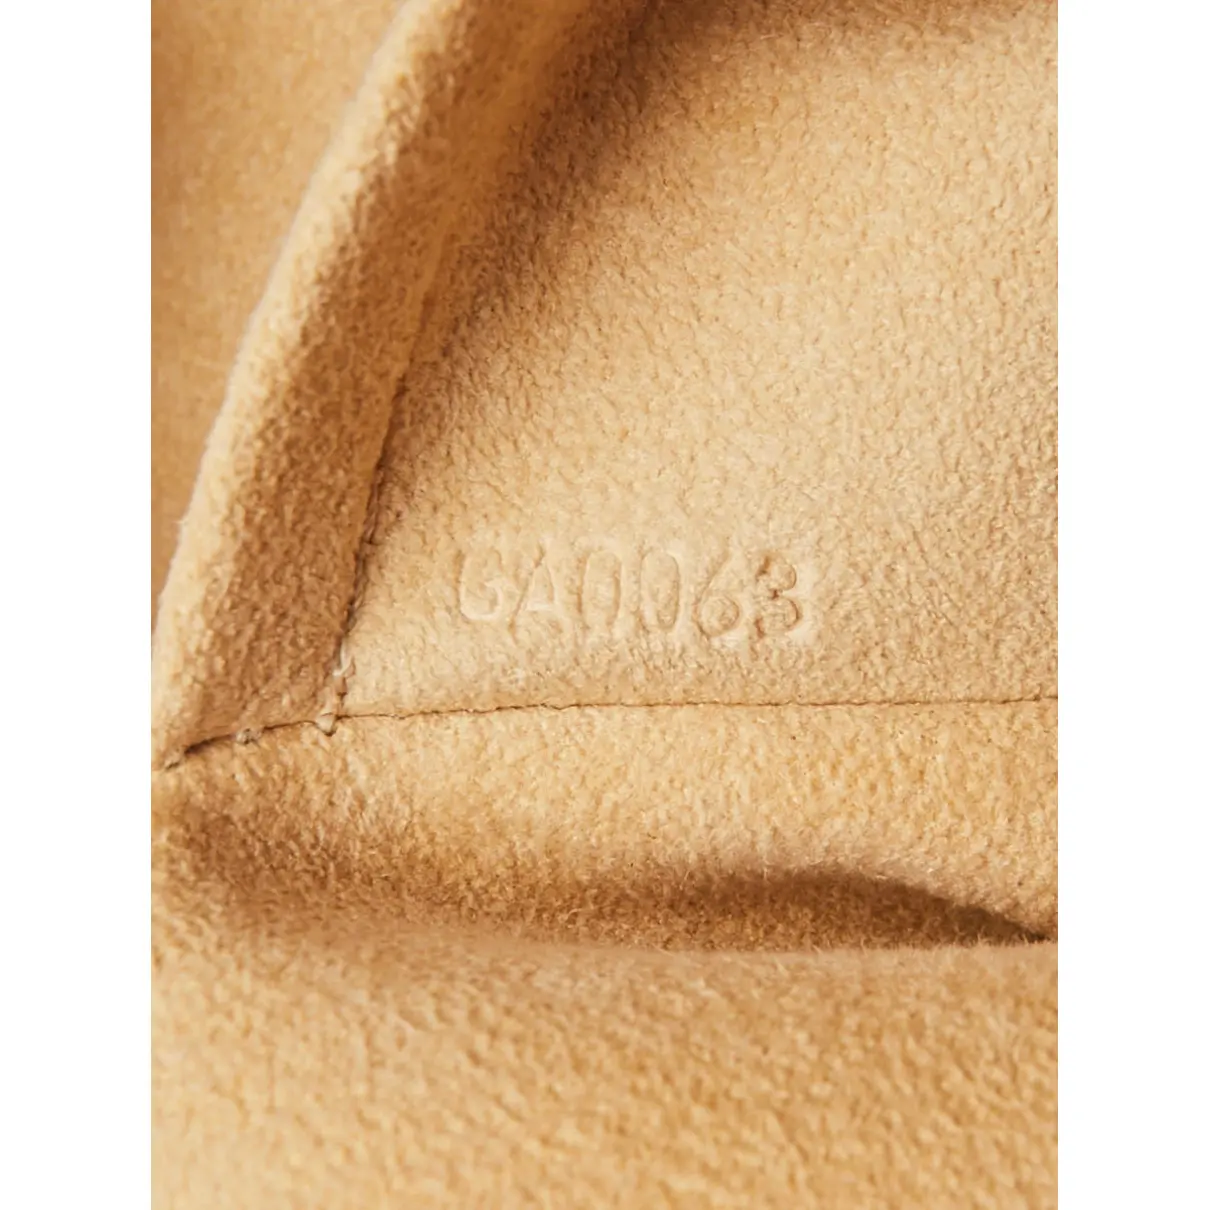 Cloth bag Louis Vuitton - Vintage